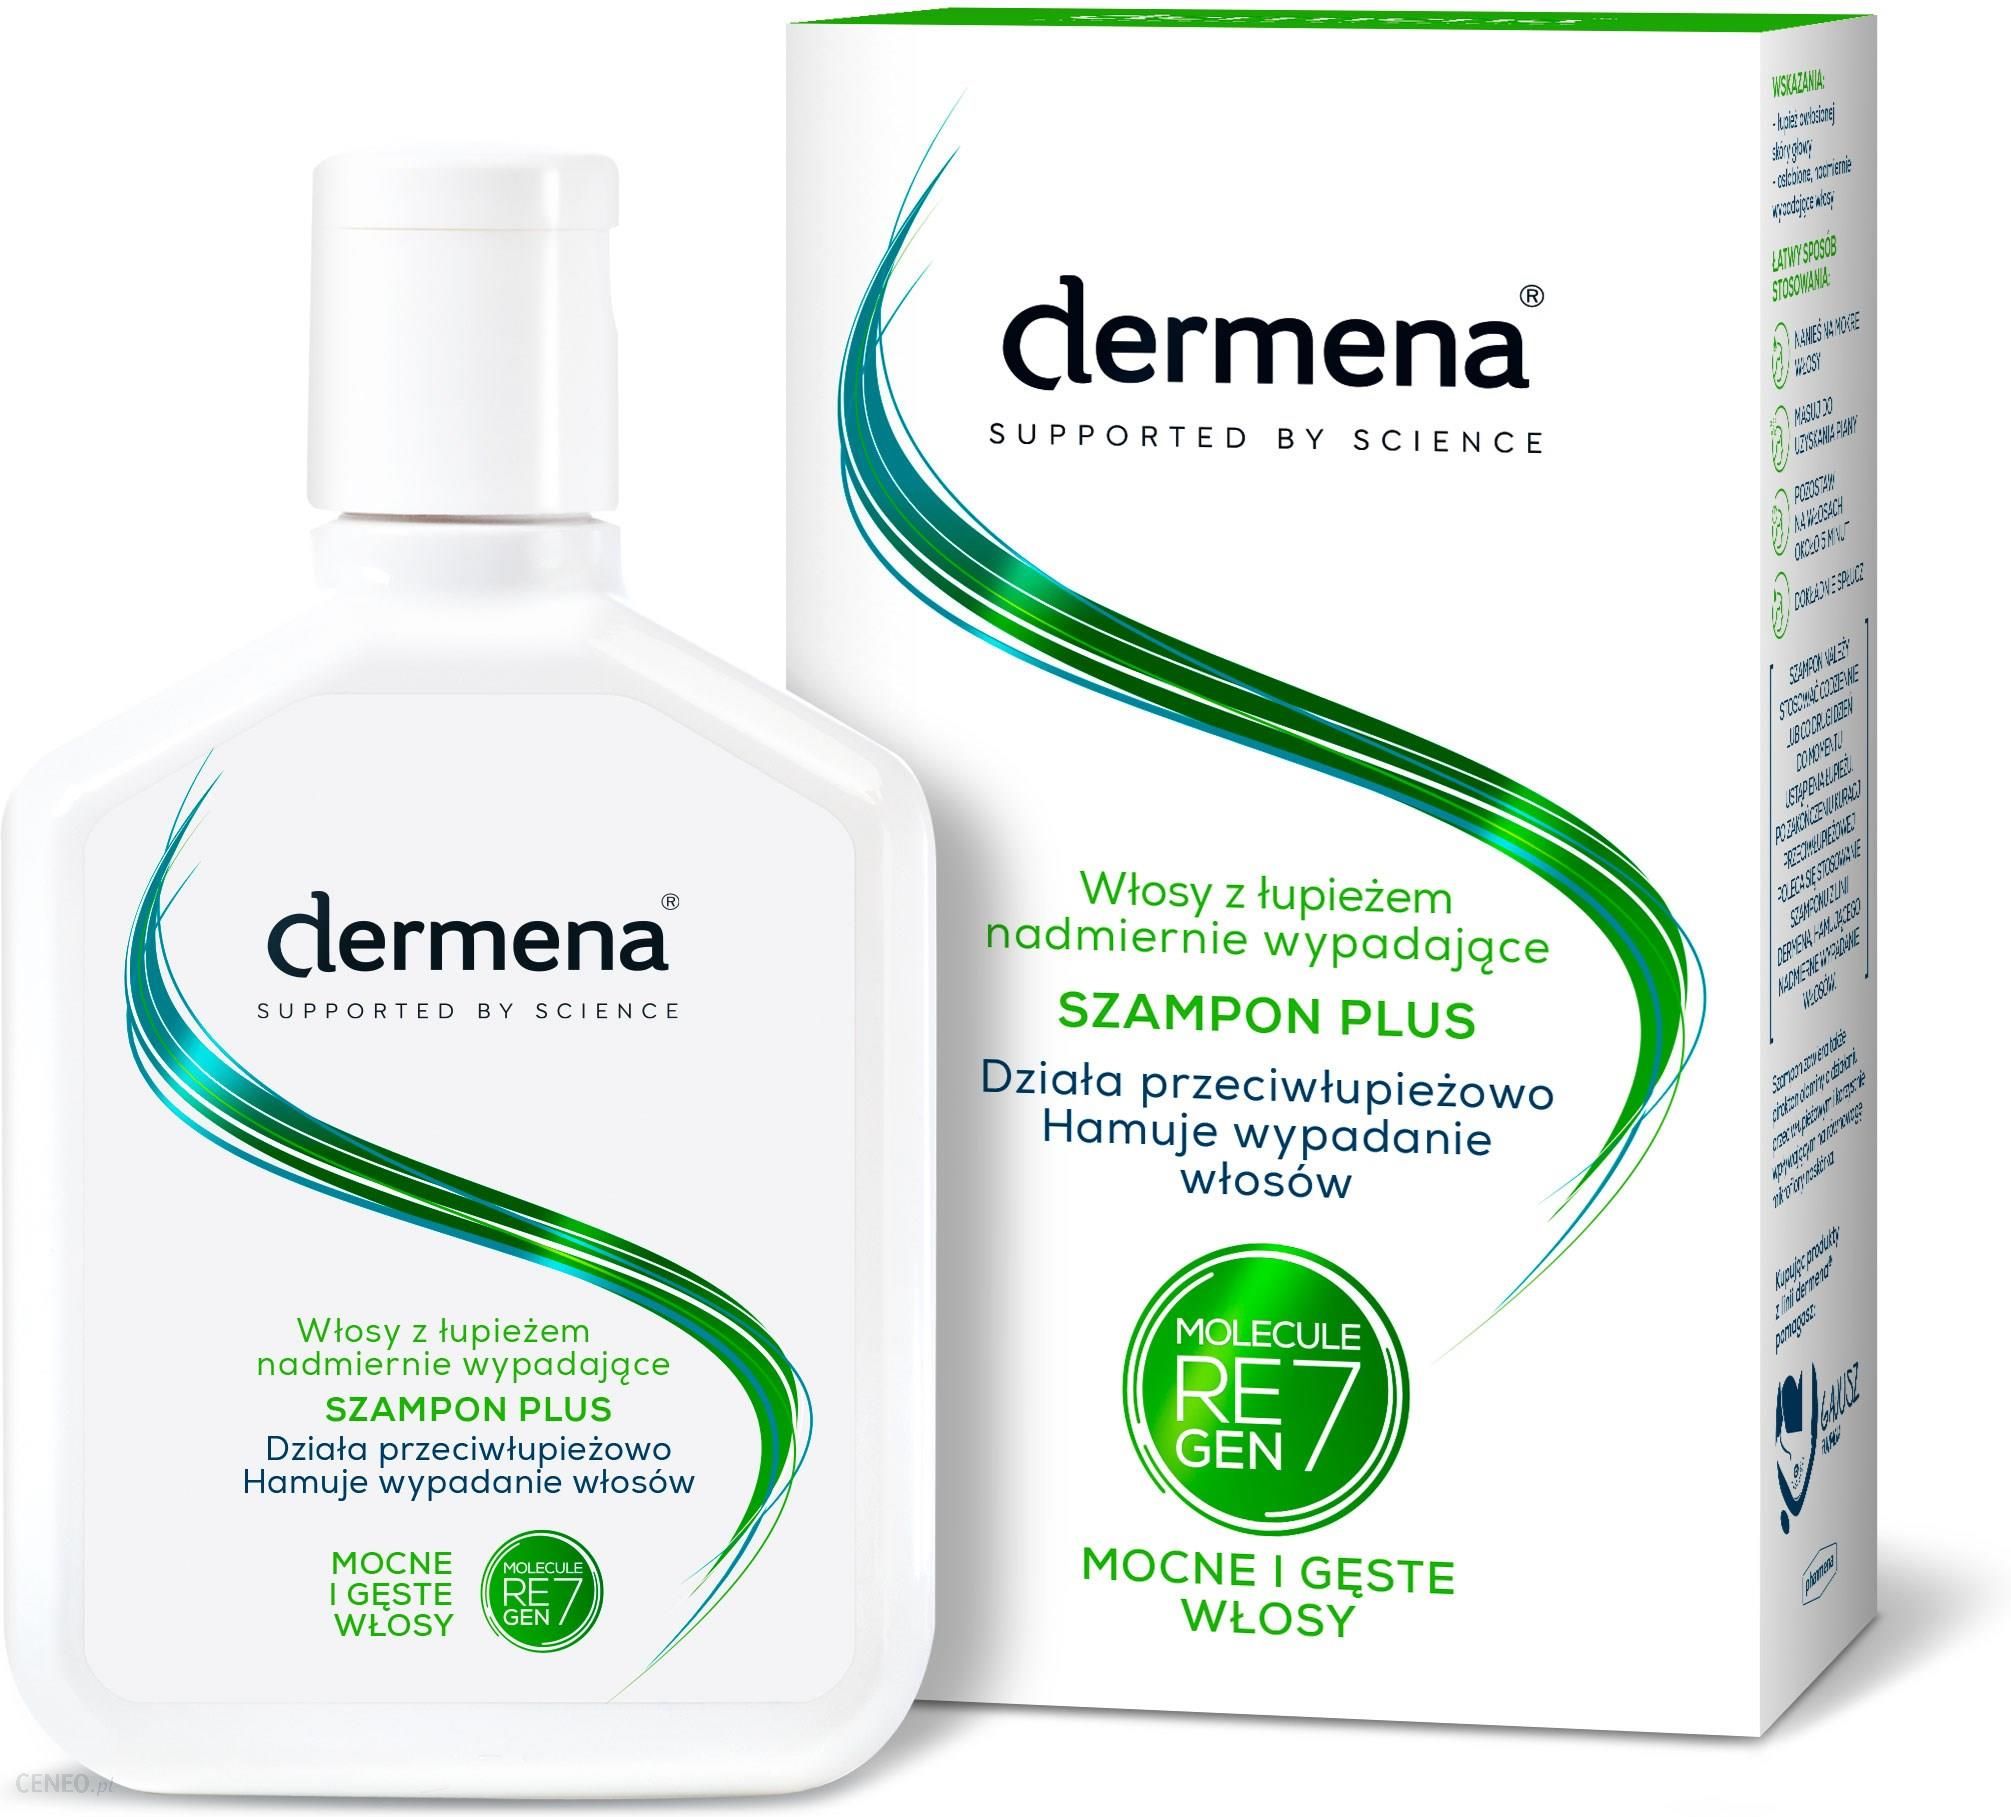 szampon repair dermena opinie